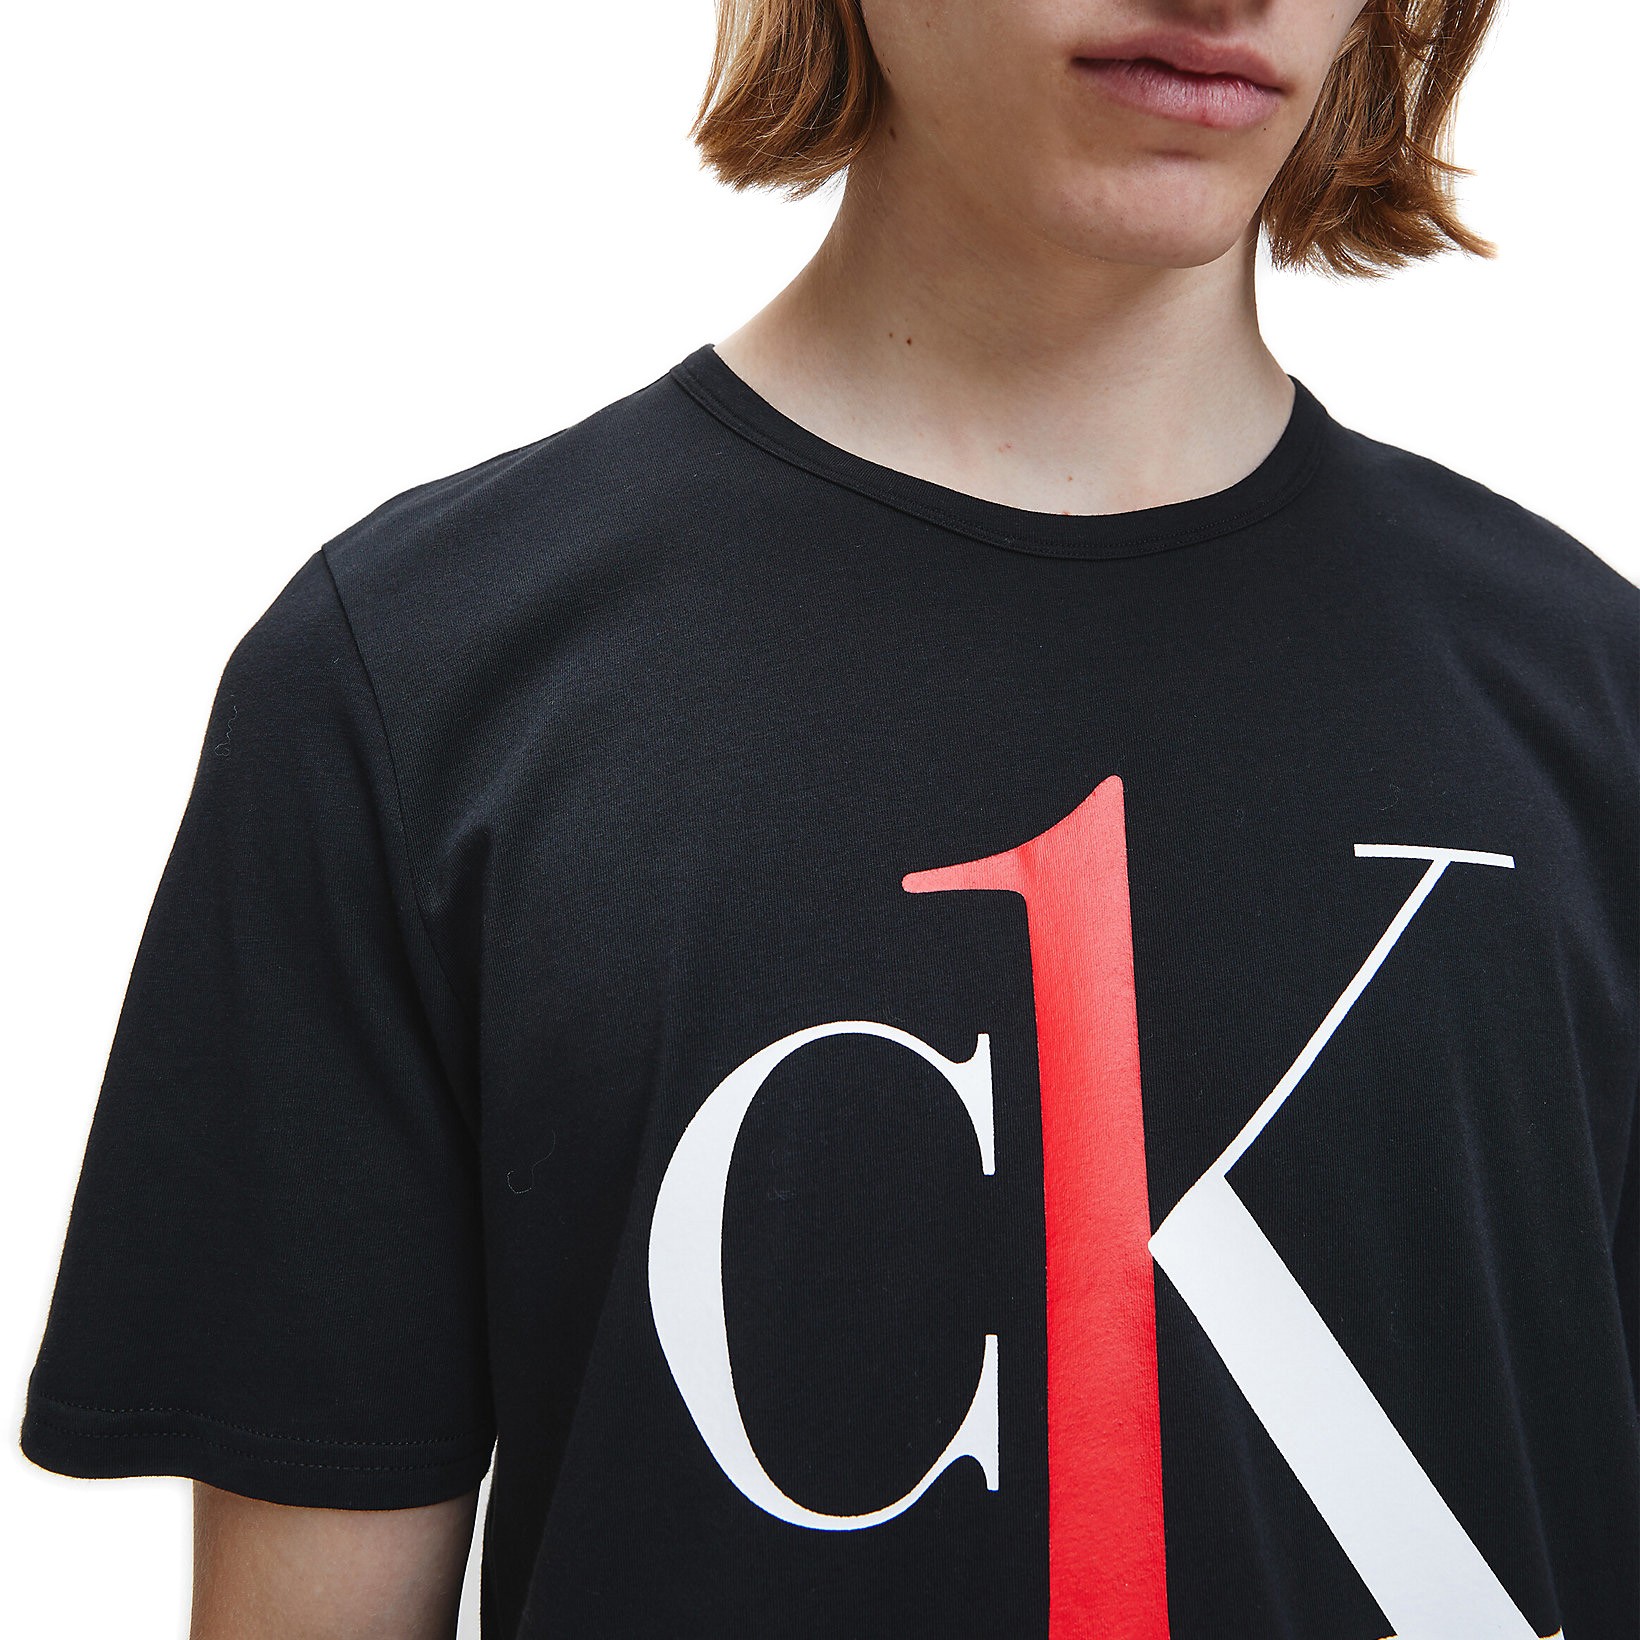 ck one shirt